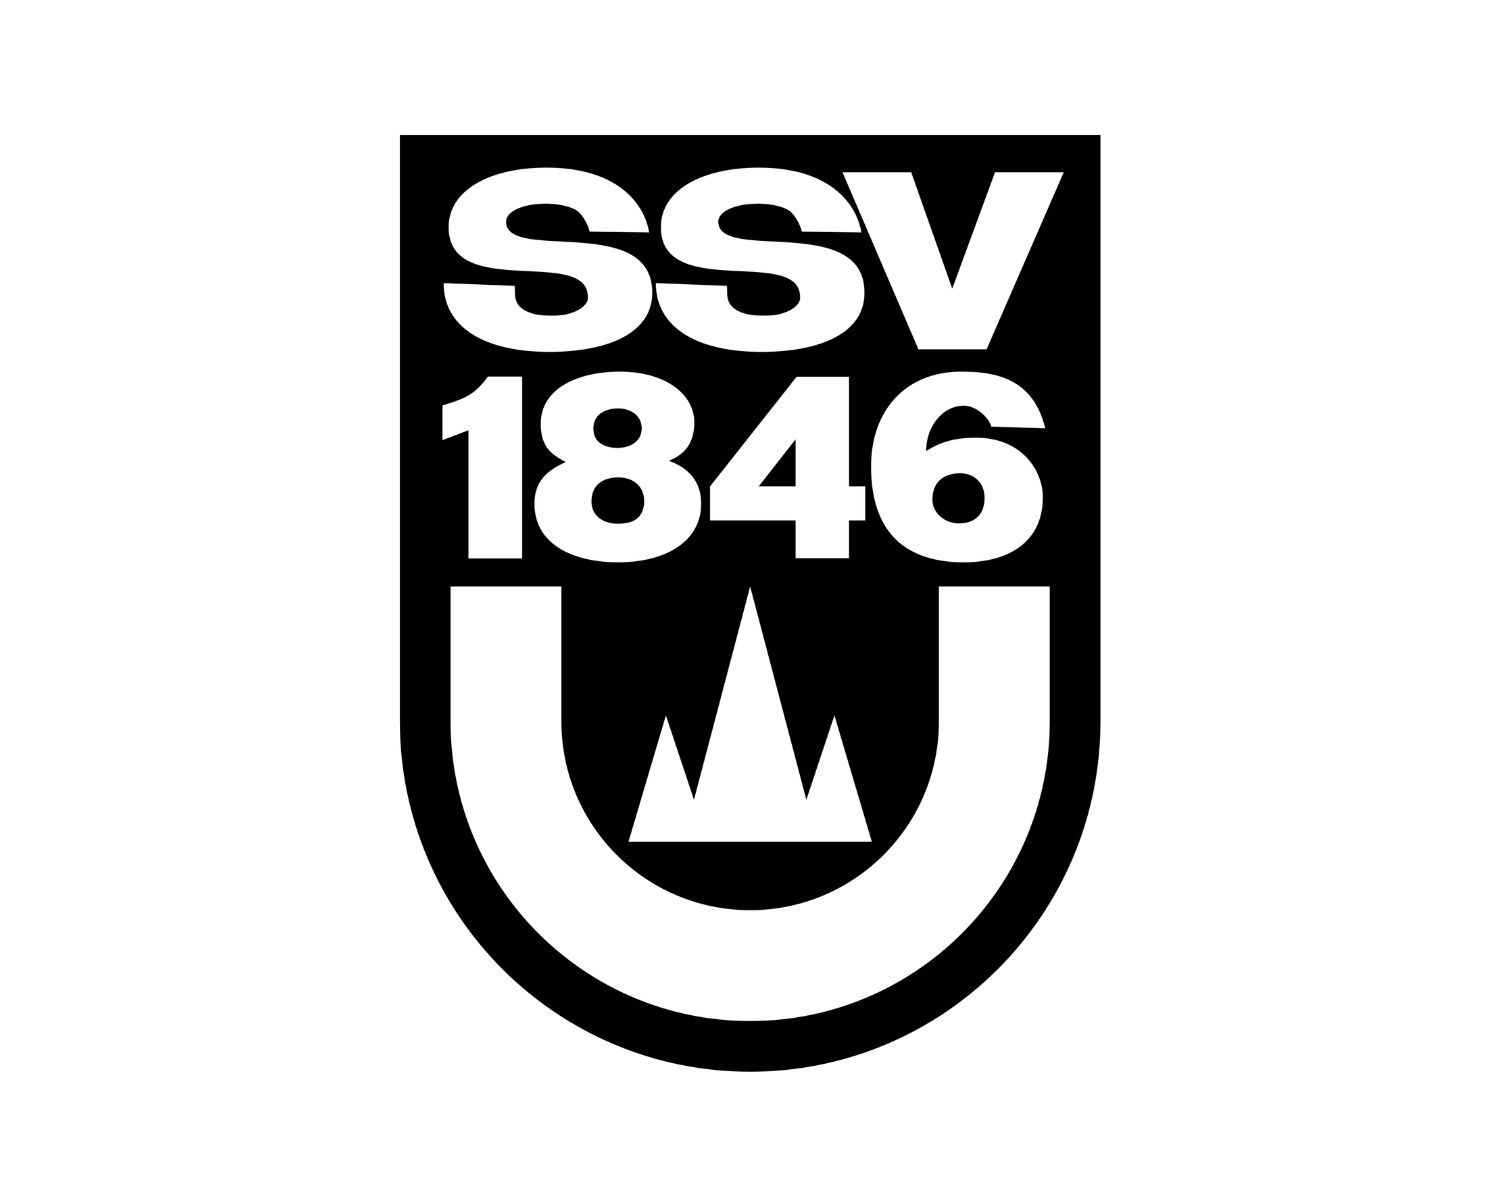 ssv-ulm-1846-11-football-club-facts